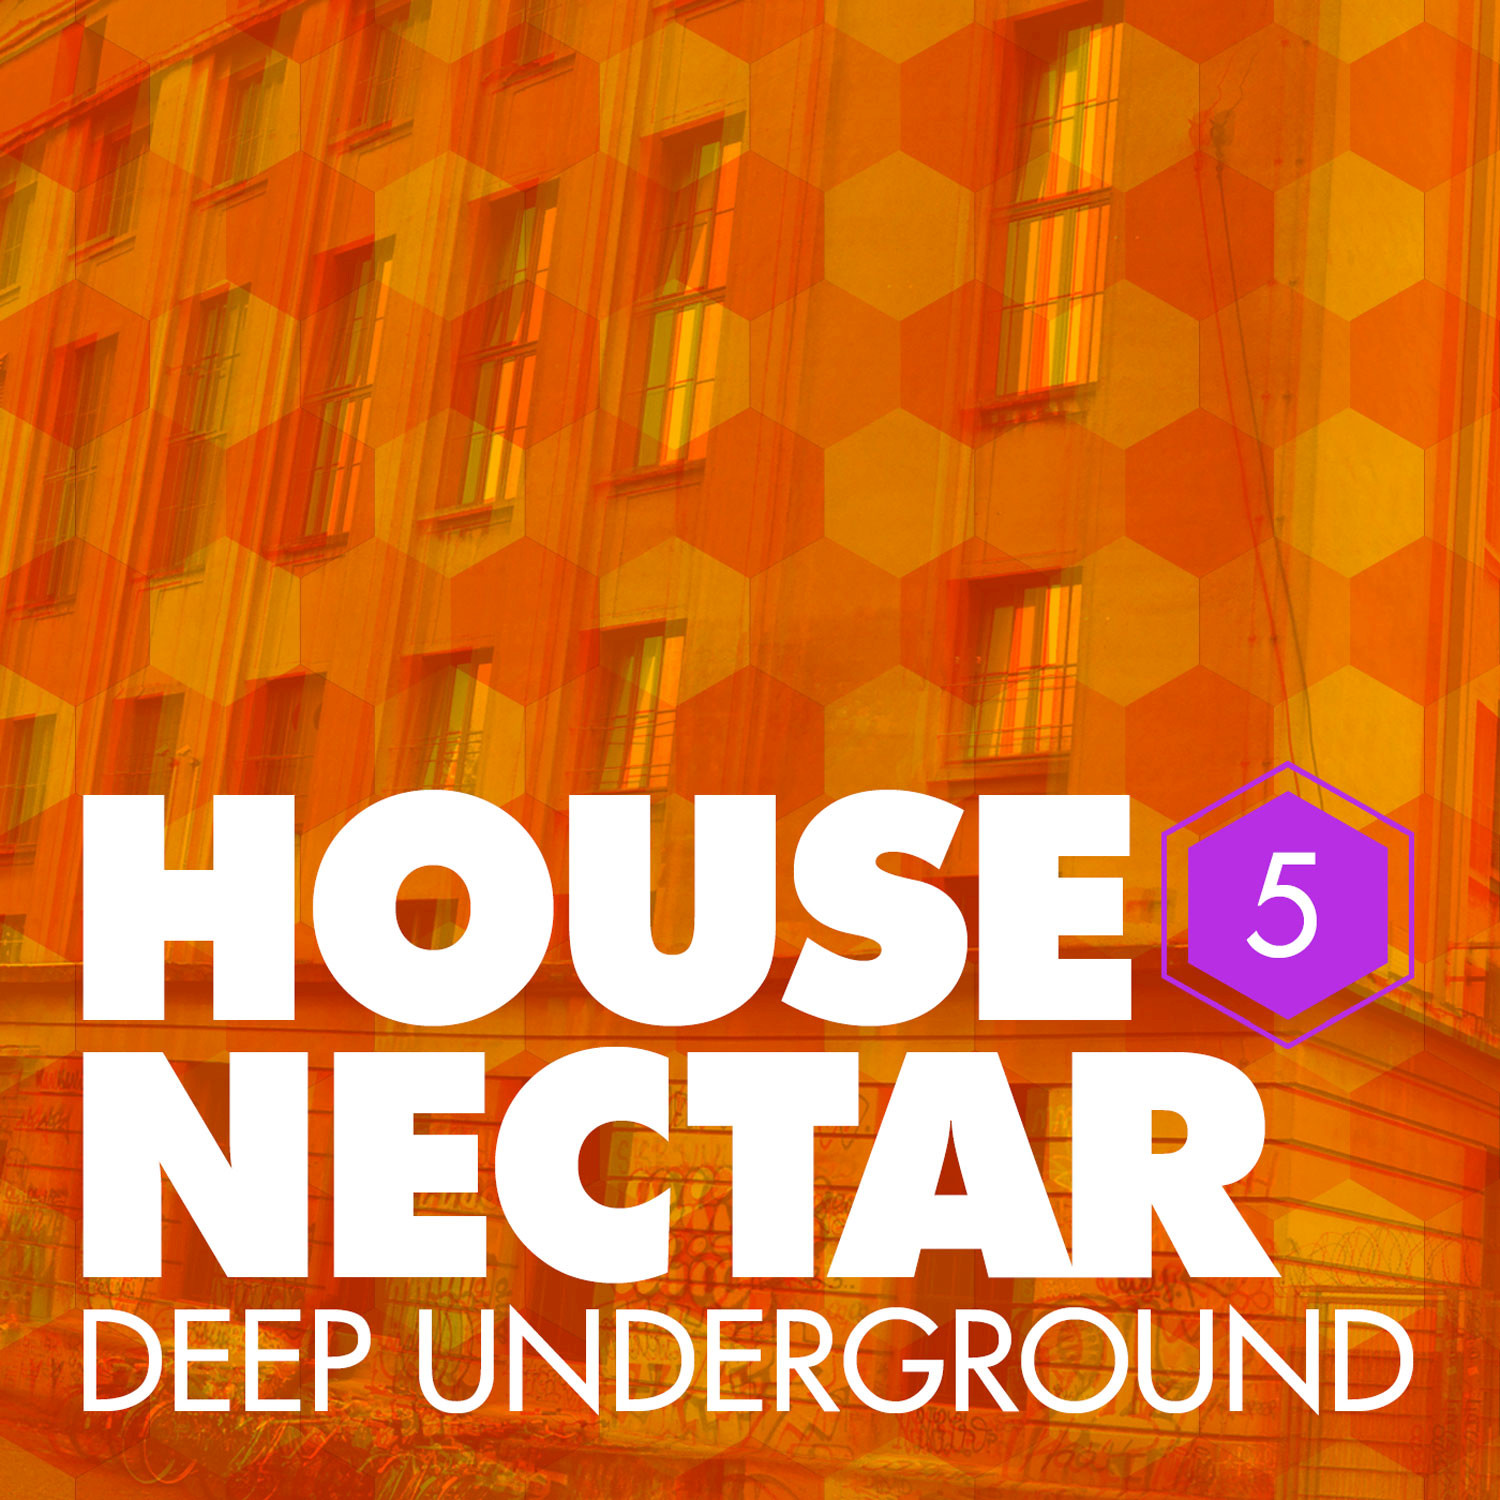 Underground House Nectar, Vol. 5